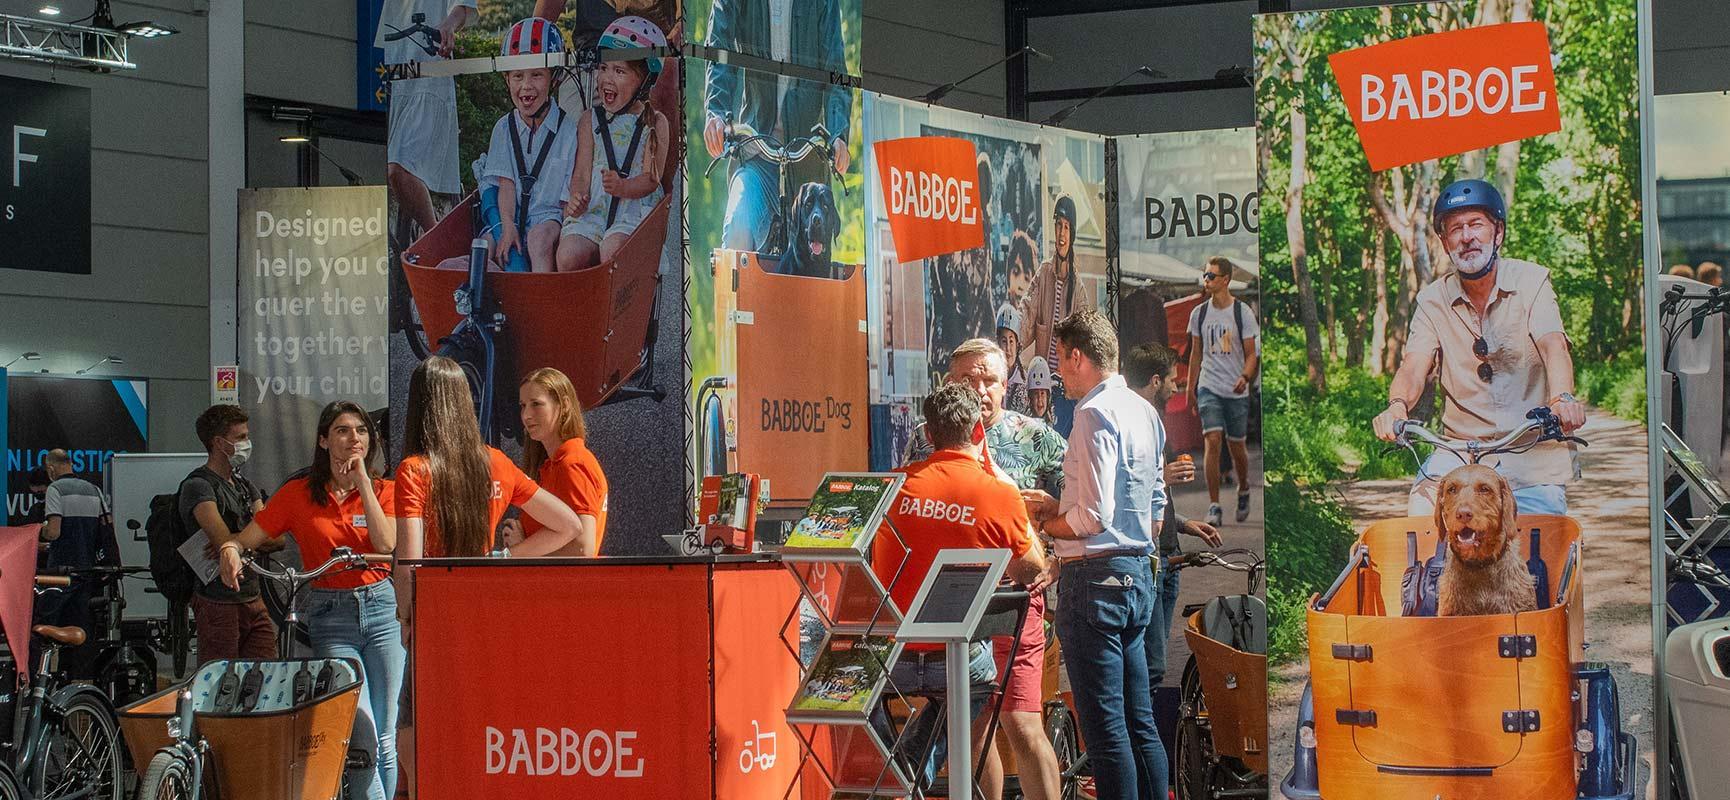 Babboe auf der Eurobike, der grÃ¶ÃŸten Fahrradmesse Europas